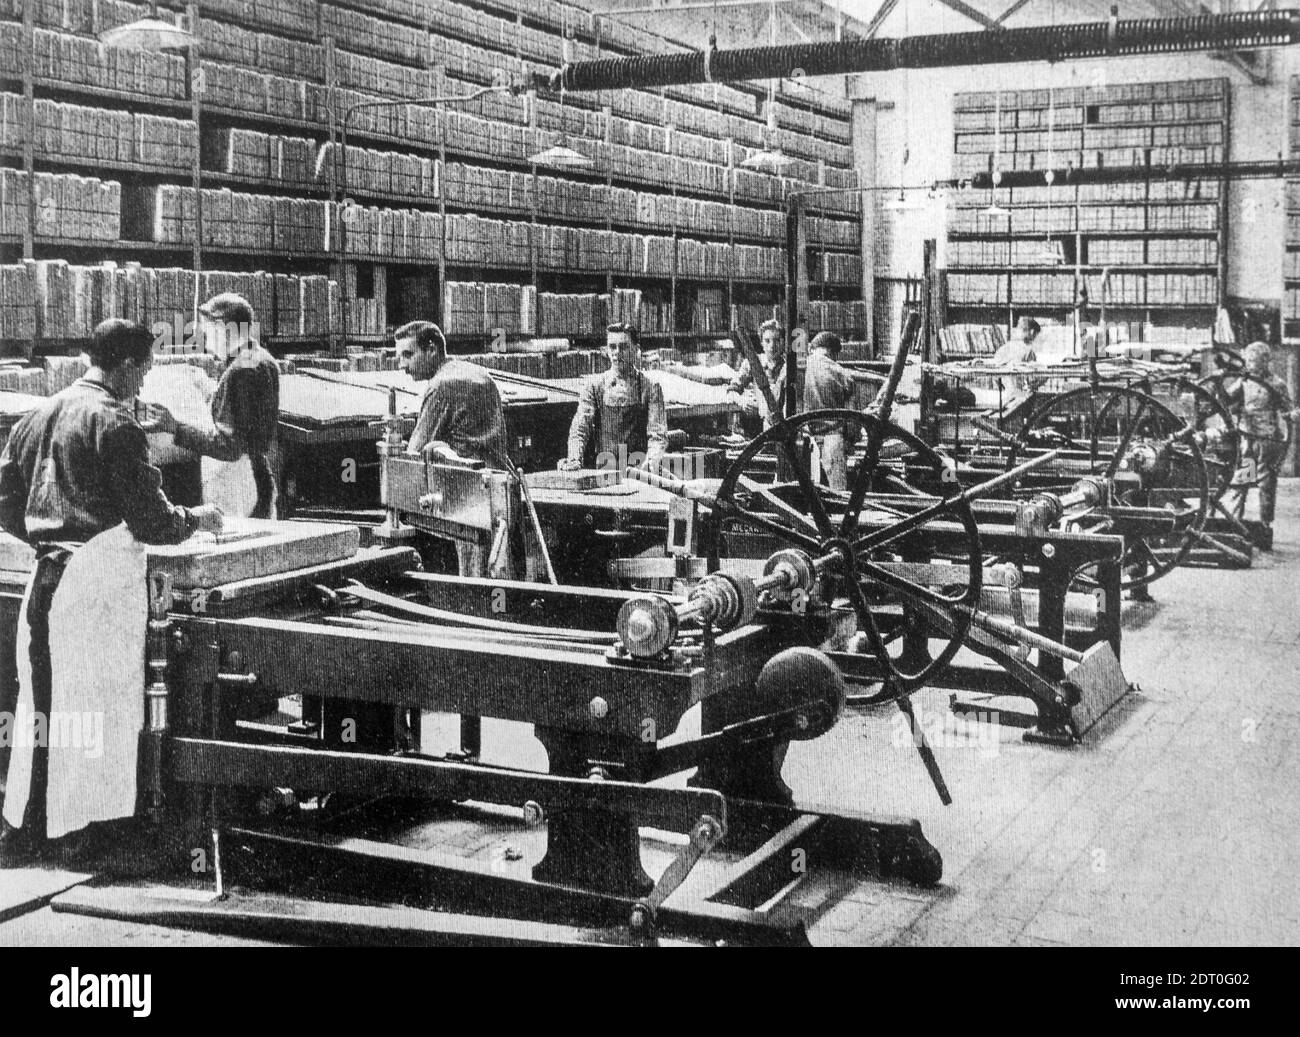 1890er Jahre schwarz-weiß Archivfoto zeigt Pressmänner arbeiten an Lithographiedruckpressen und -Gestelle für die Lagerung von Lithographiesteinen in pressroom Stockfoto